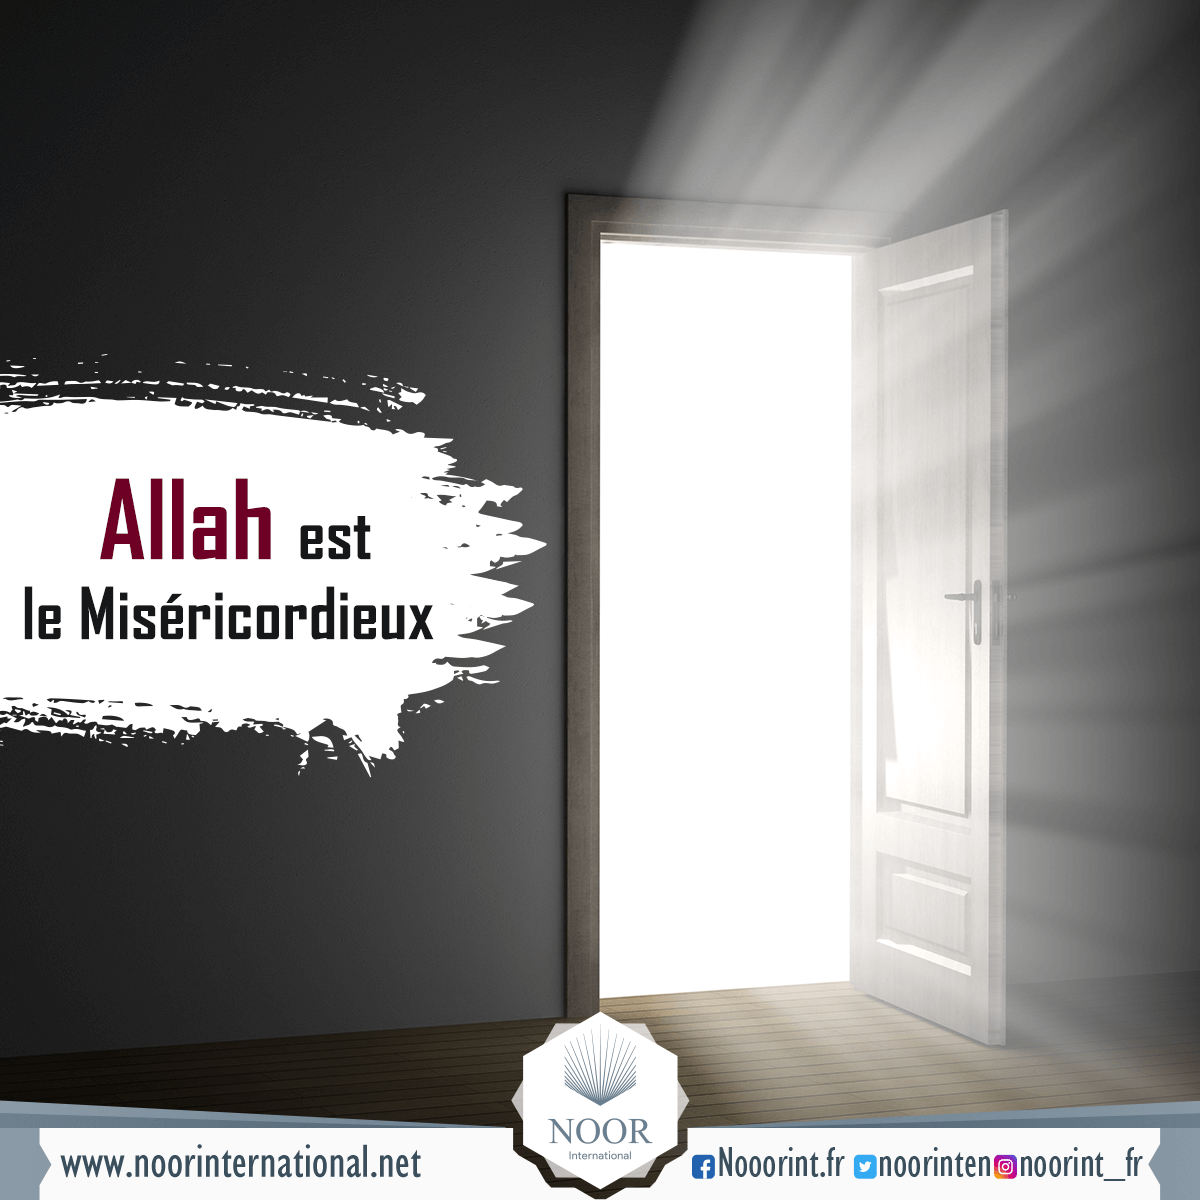 Allah est le Miséricordieux